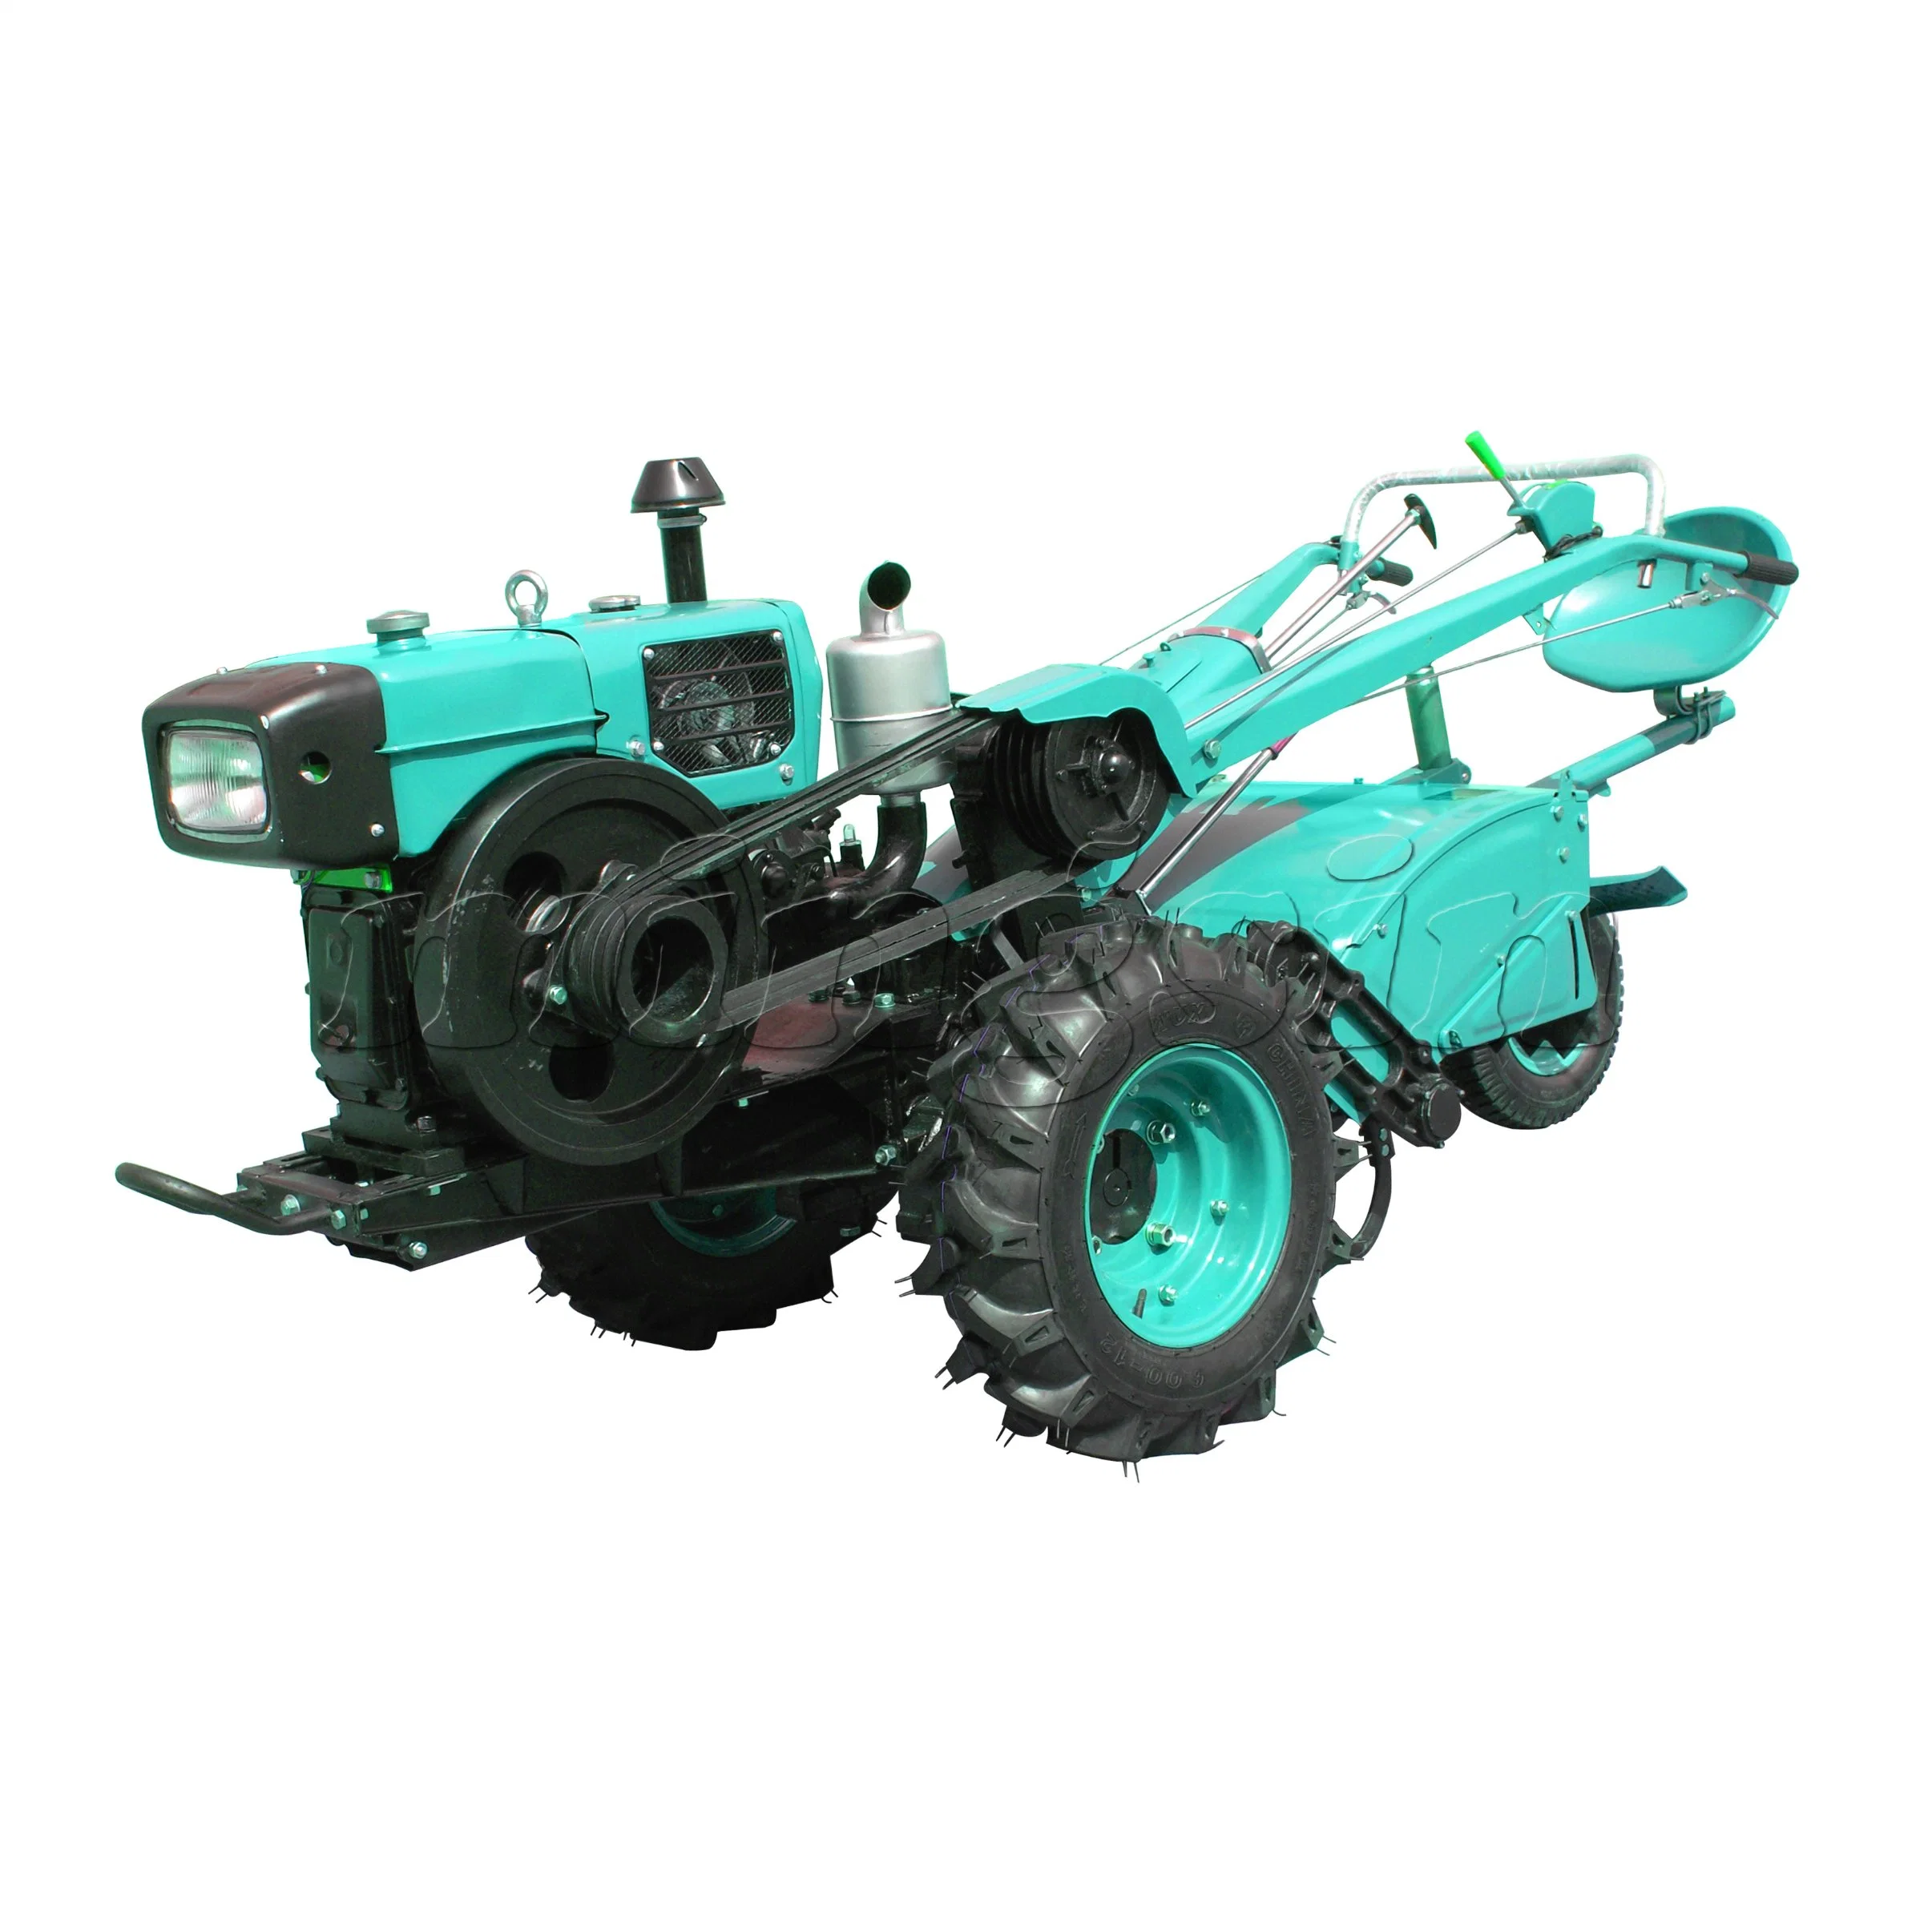 Tractor de Paseo/ Motocultor Diesel de 15HP (MX151D), Tractor de Dos Ruedas